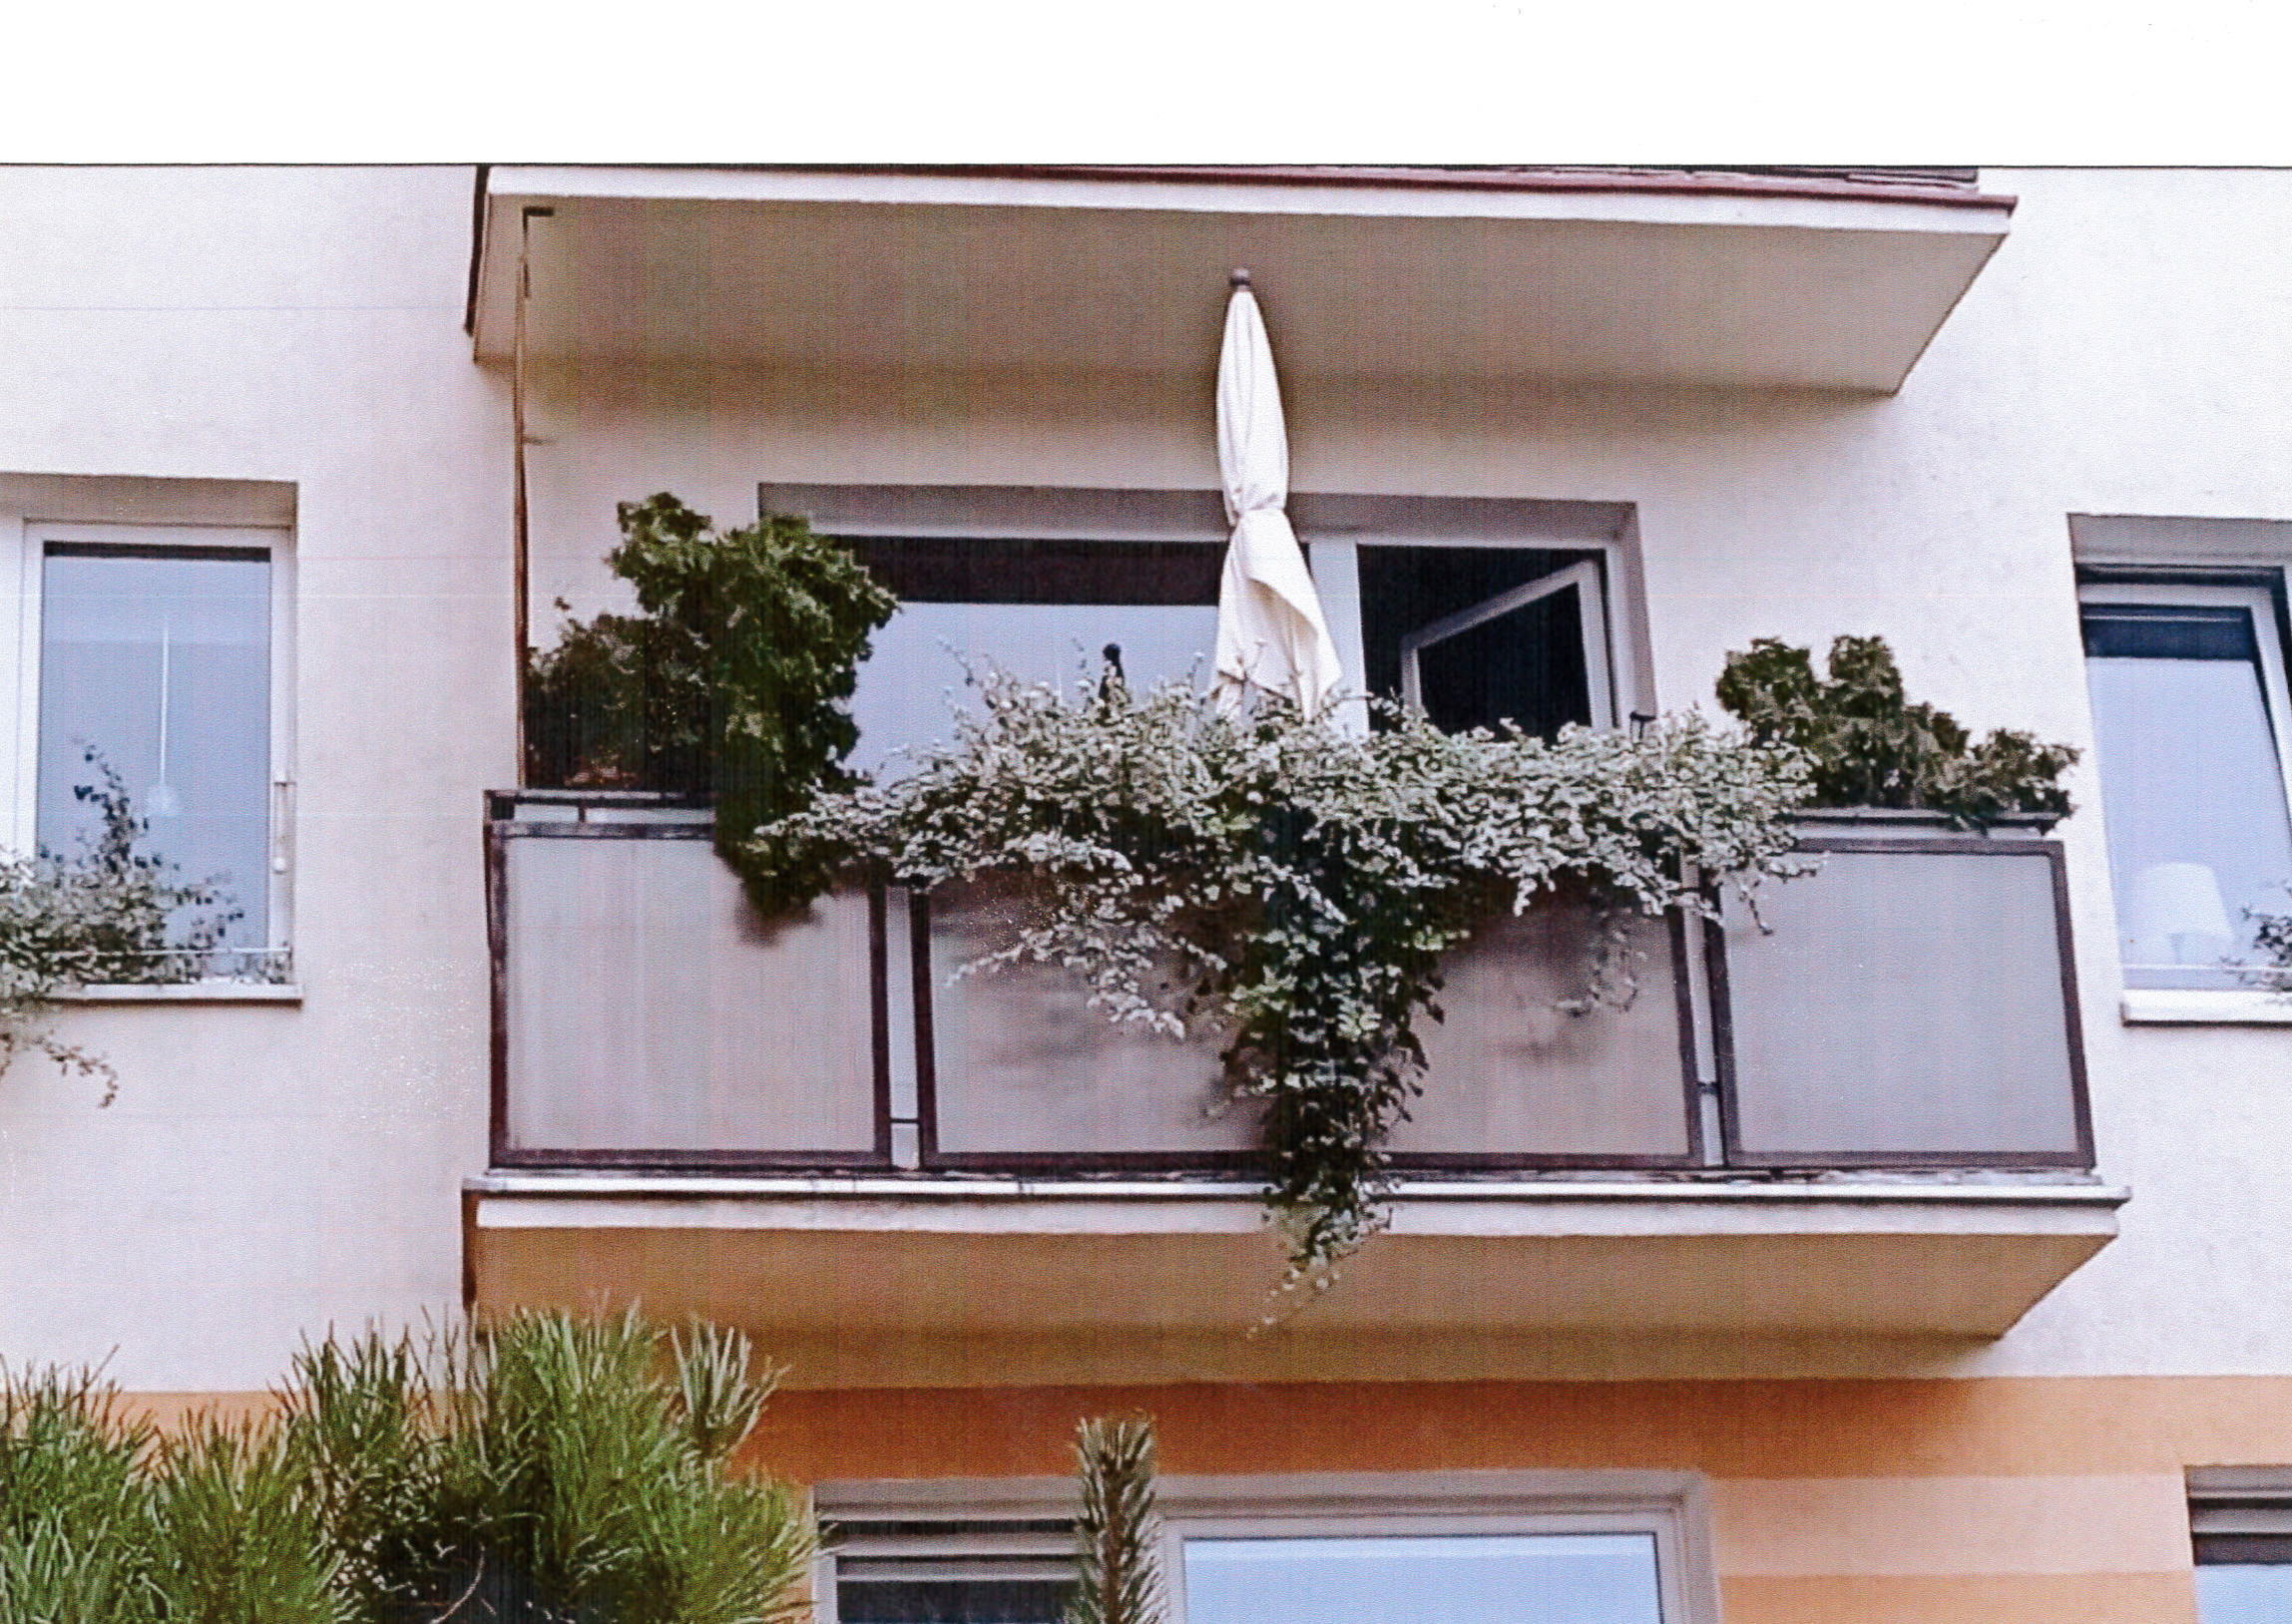 Aranżacja balkonu autorstwa Stanisława Antczaka z przewagą rdestu Auberta i traw